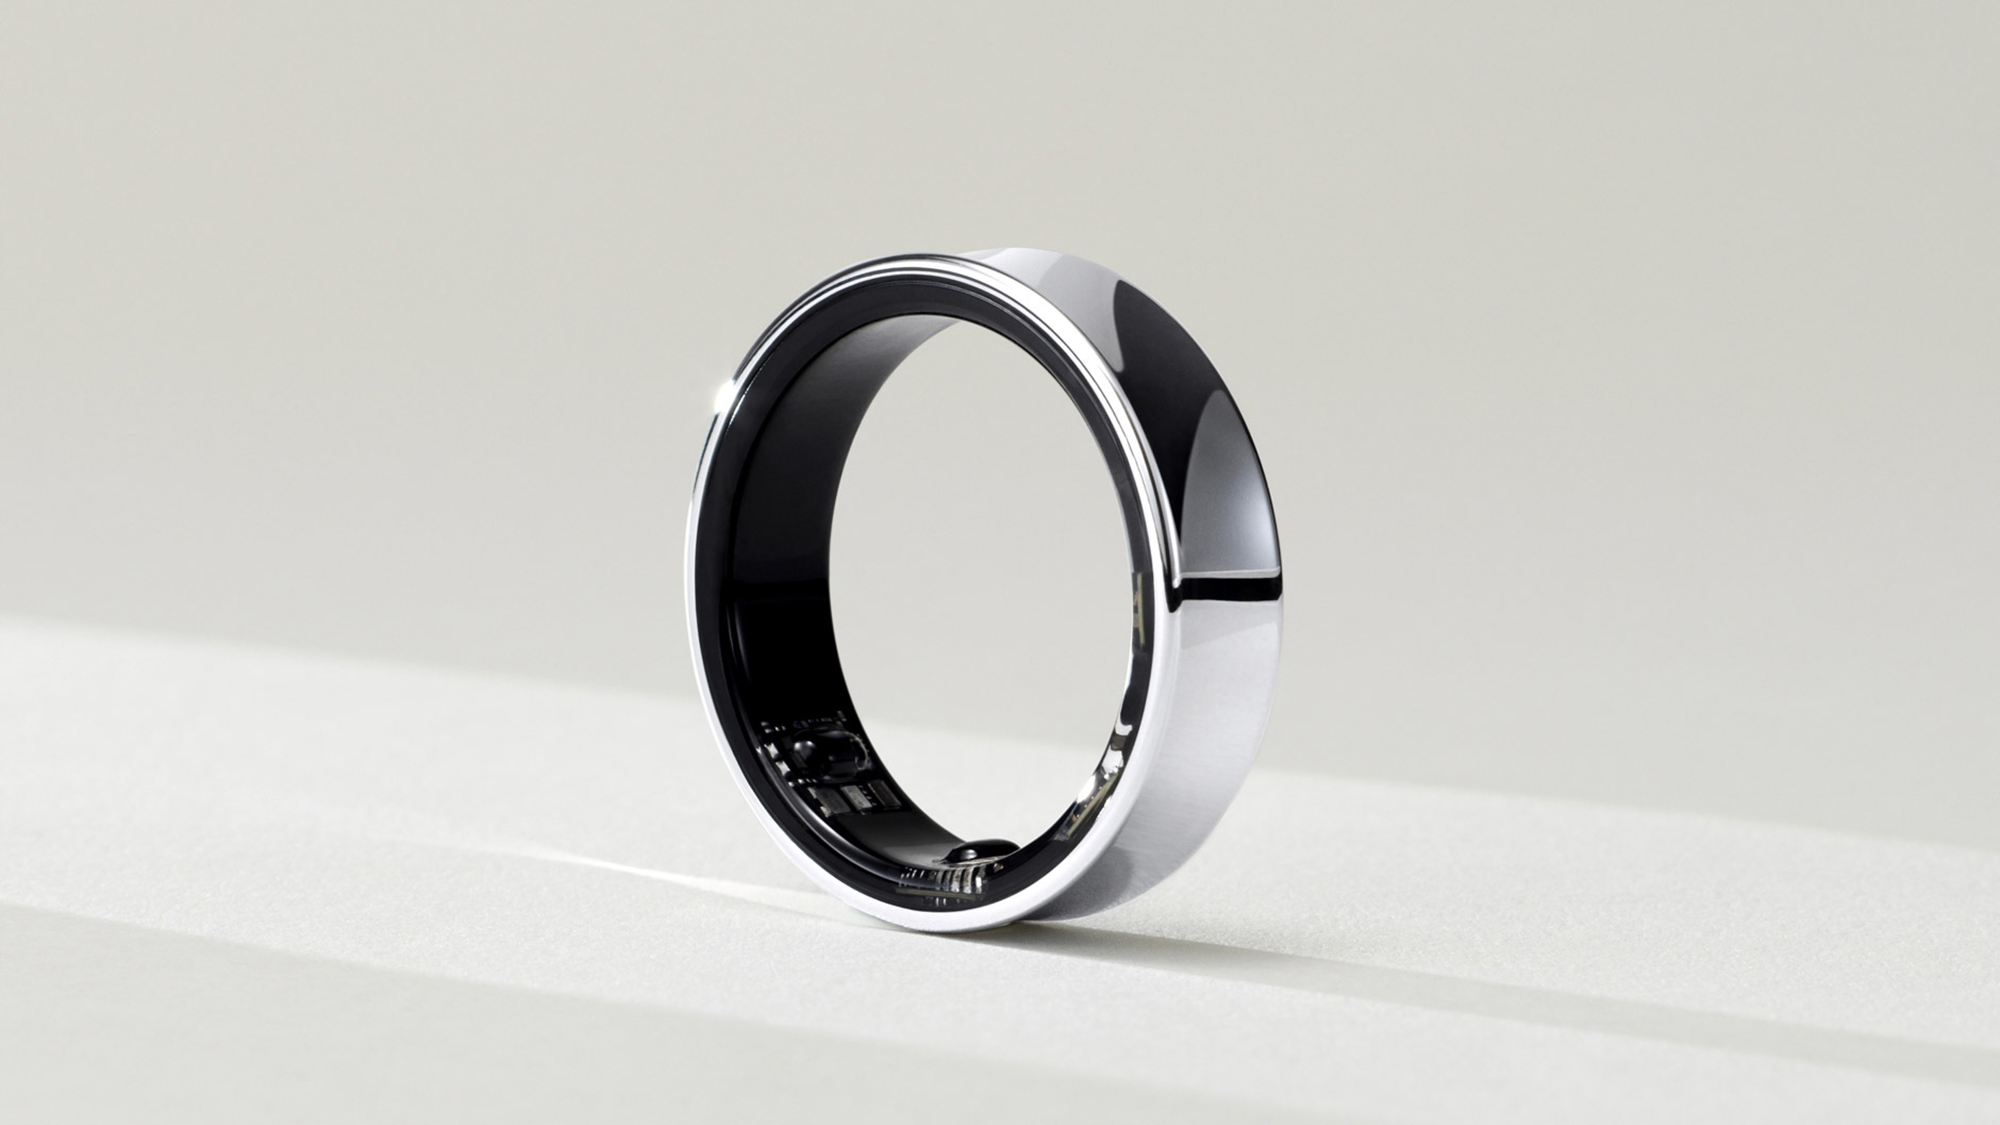 Prototipo del anillo Samsung Galaxy